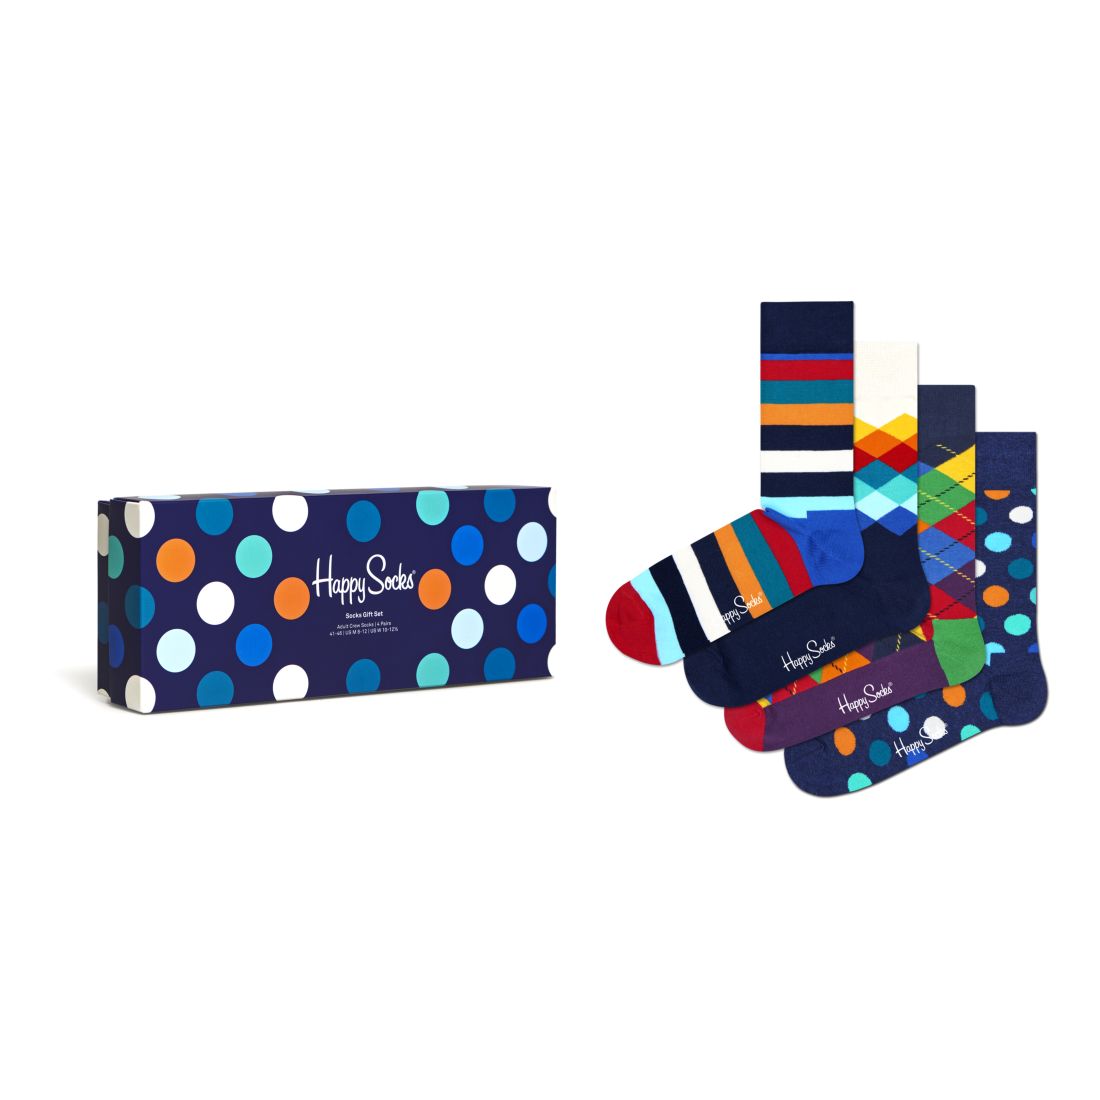 Happy Socks Multi-Color Socks Gift Set Adult Unisex Crew (4 Pairs)